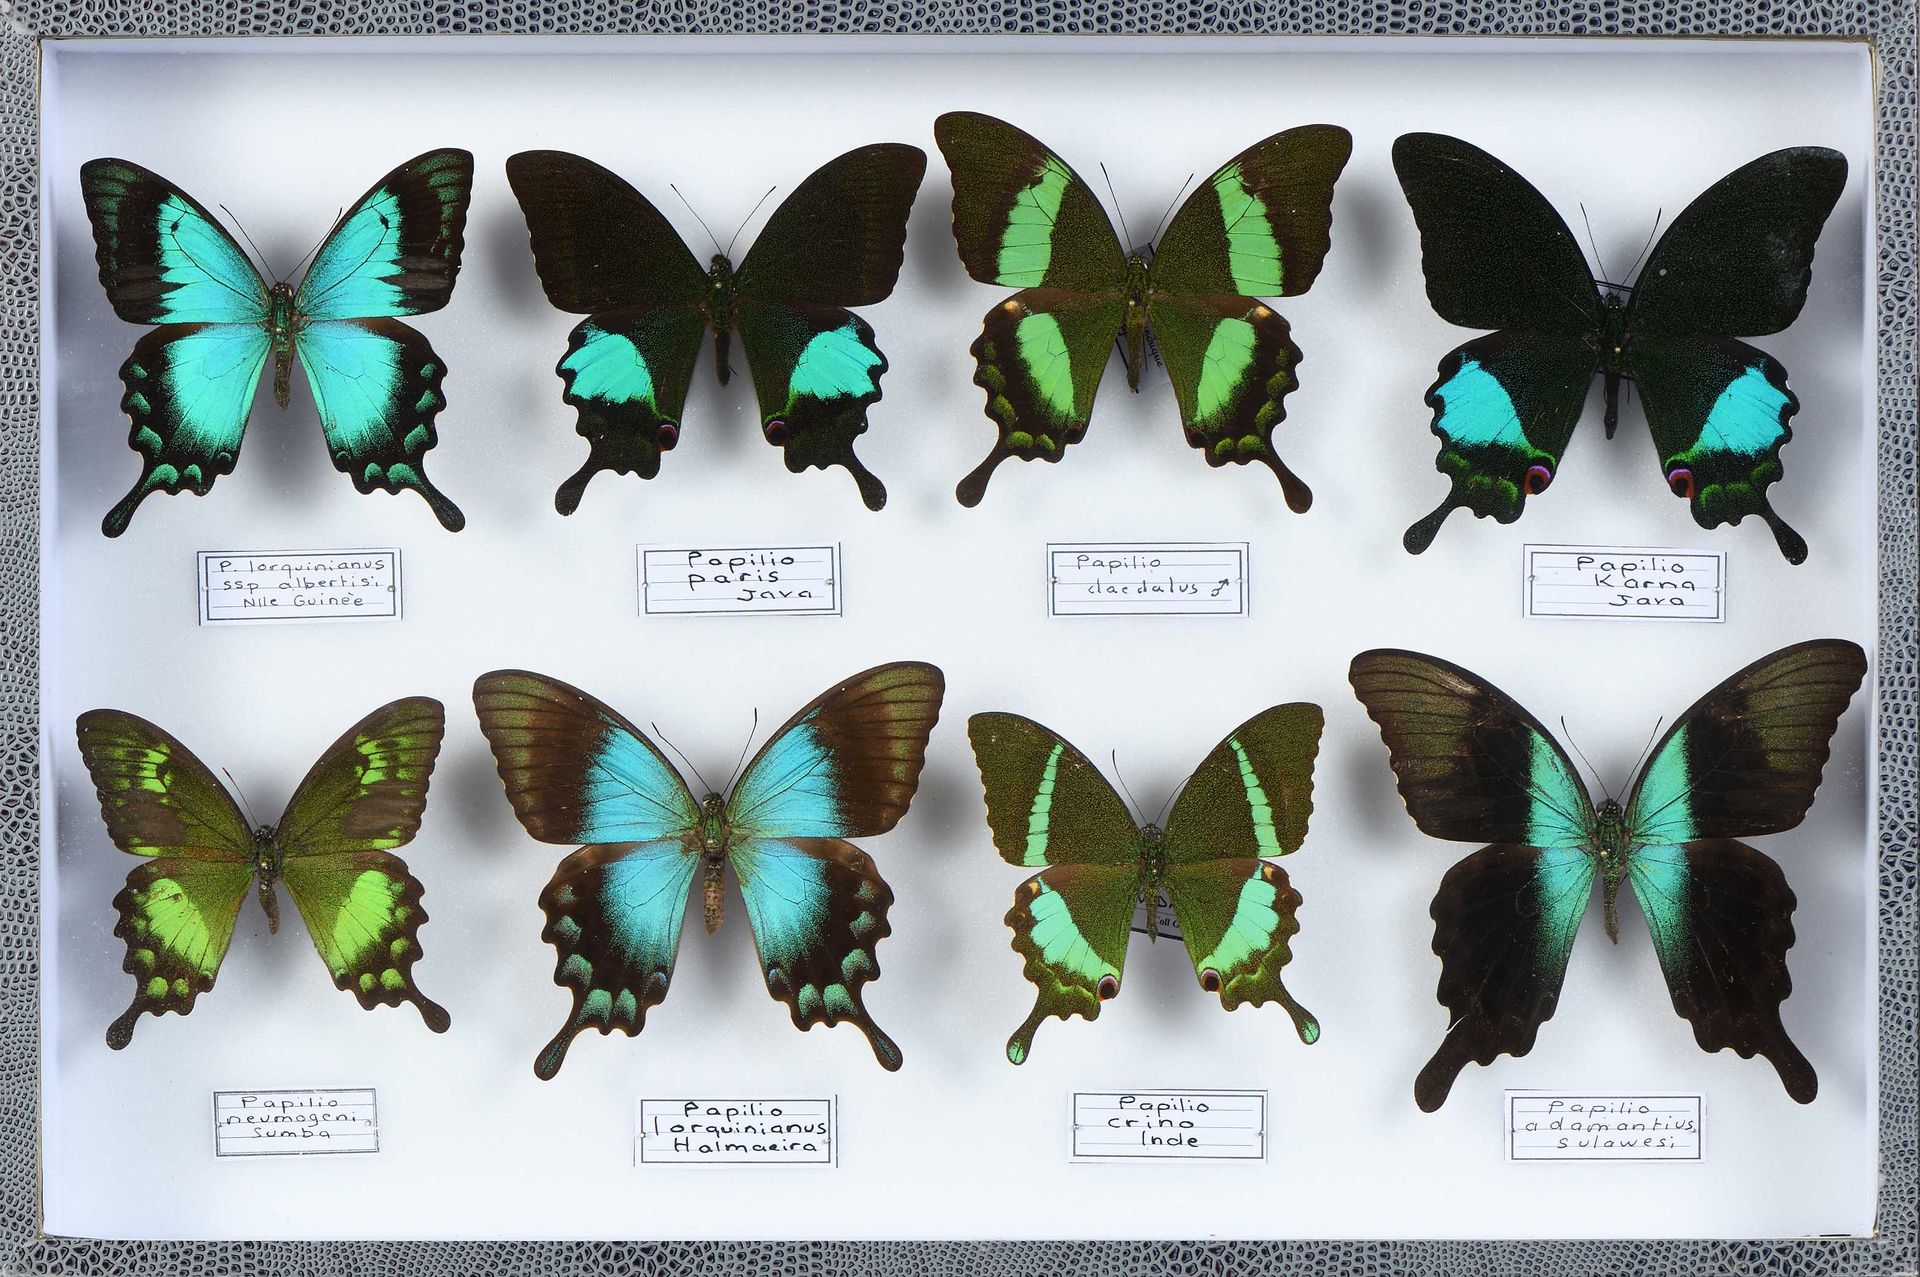 Null Papilio crino, karna, neumoegeni, lorquinianus, paris et divers 8 ex.